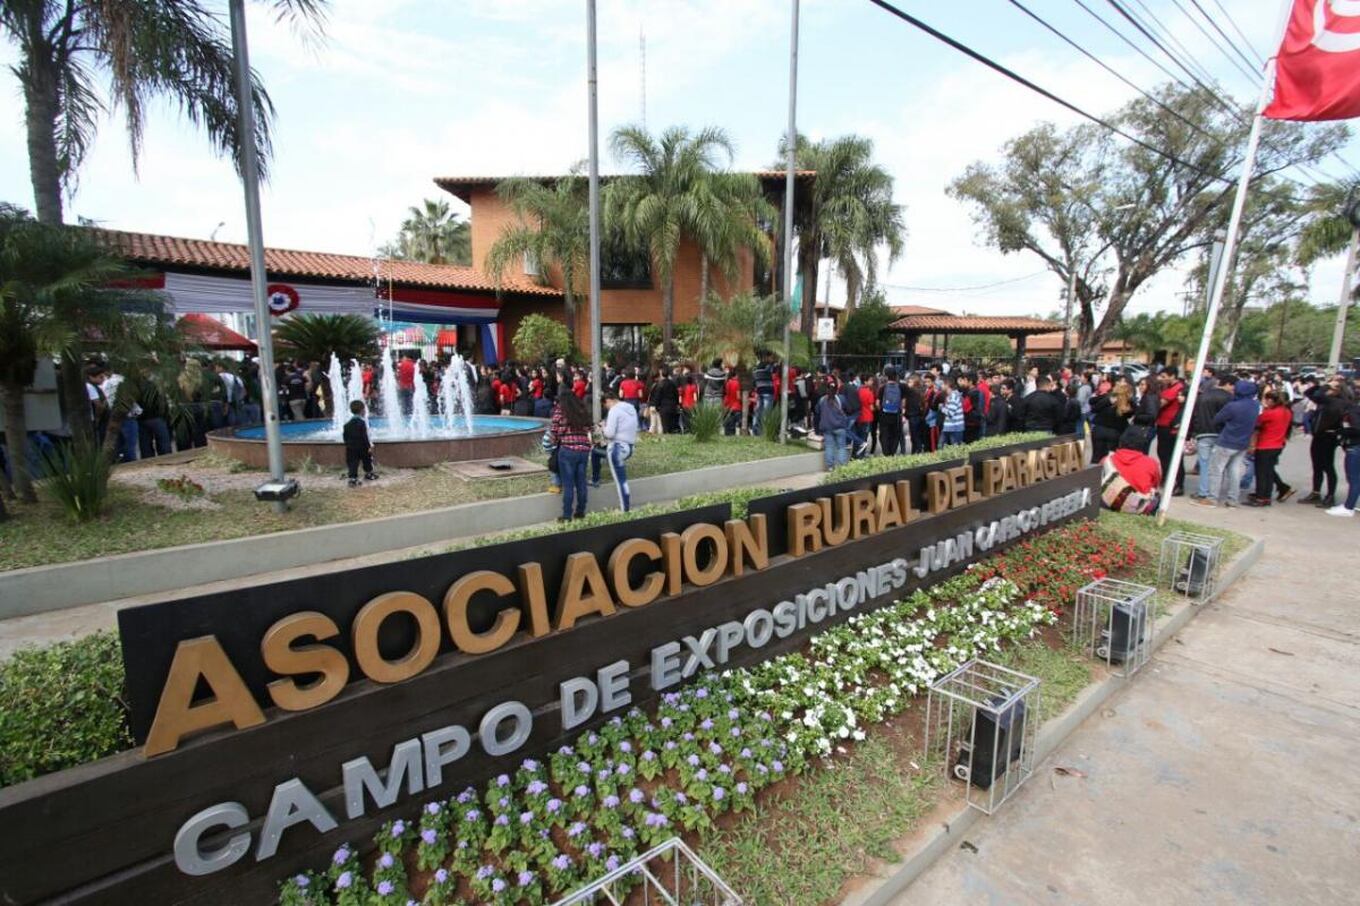 La entrada para estudiantes es gratuita. Foto: Pánfilo Leguizamón.